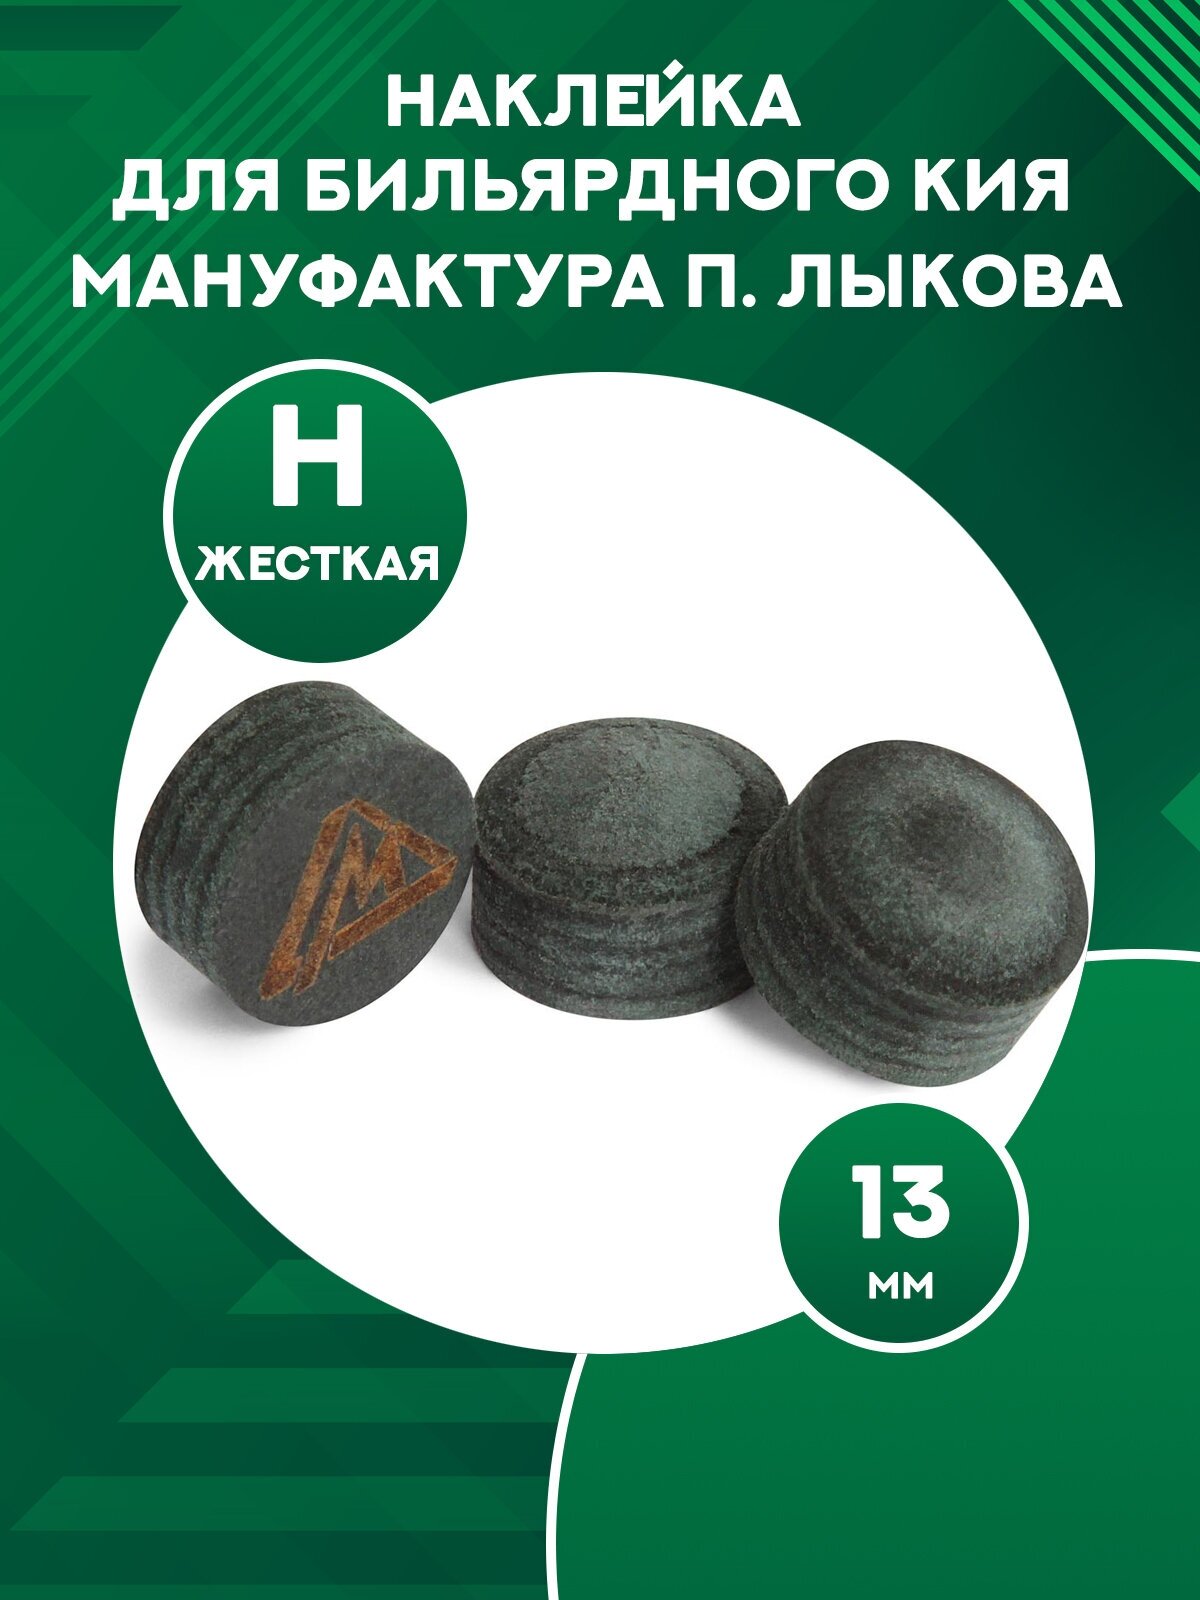 Наклейка для бильярдного кия Мануфактура П. Лыкова, диаметр 13 мм, HARD